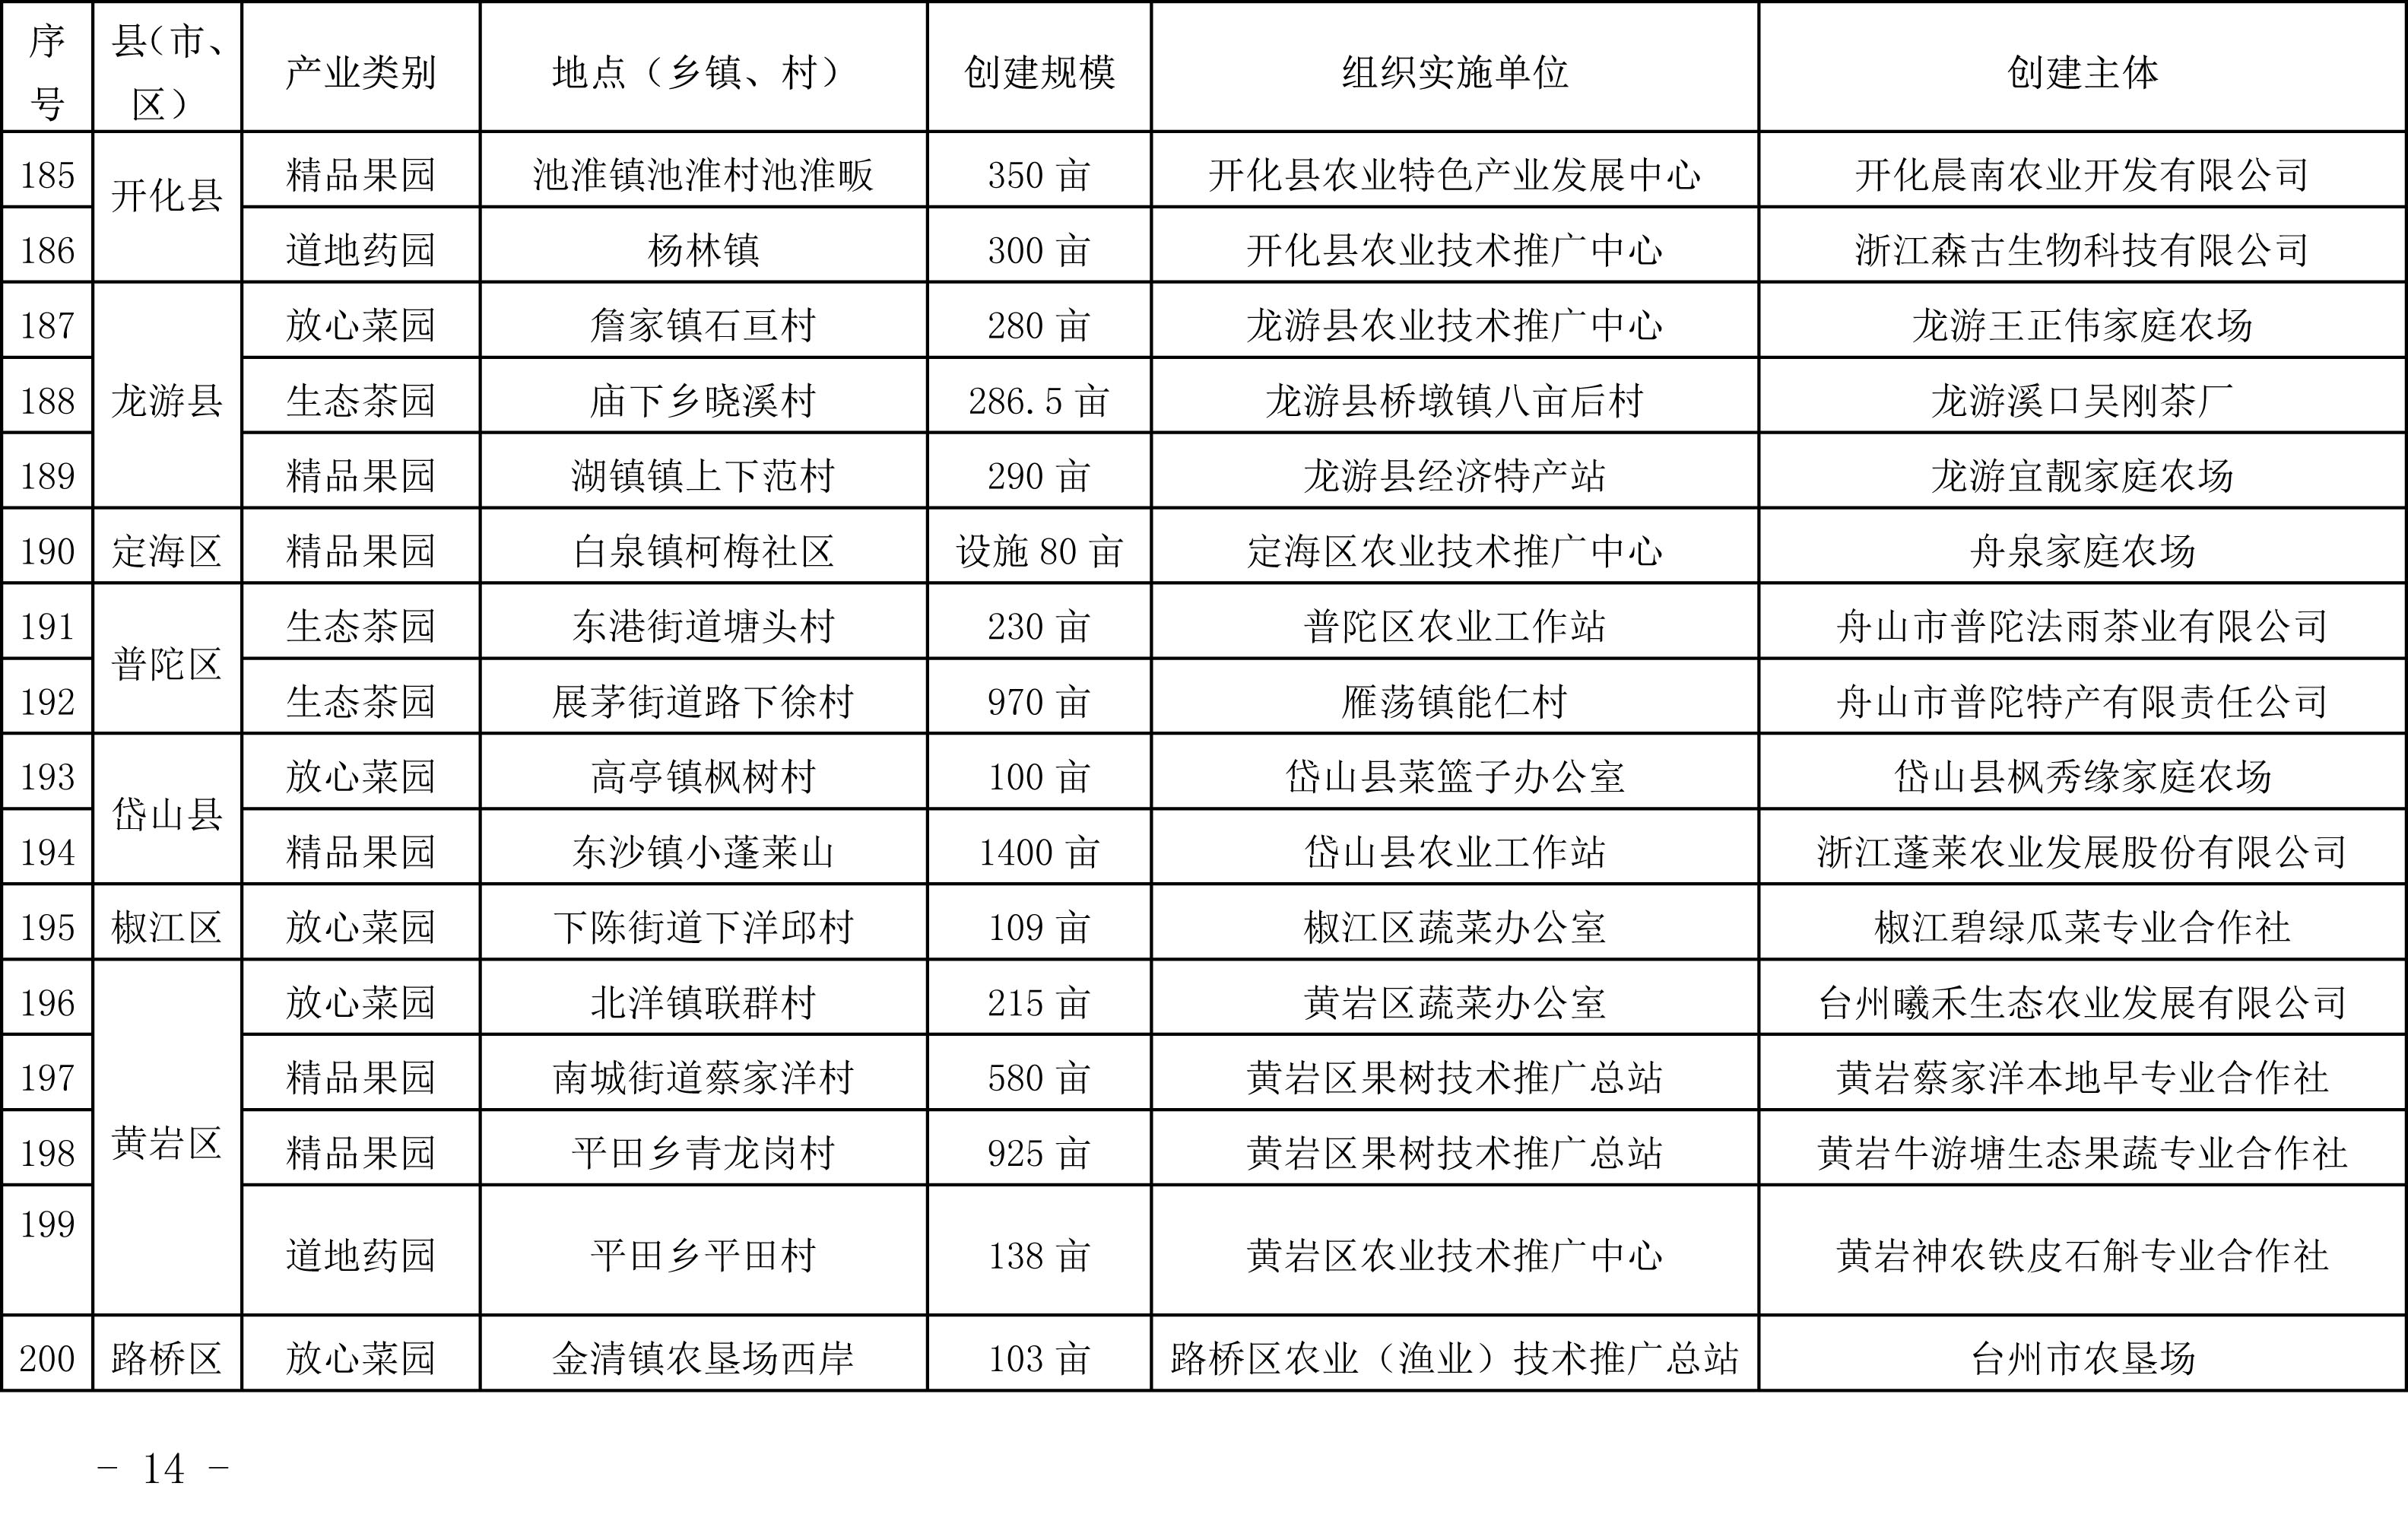 浙江省农业农村厅关于公布2019年度种植业“五园”创建省级示范基地名单的通知(图13)